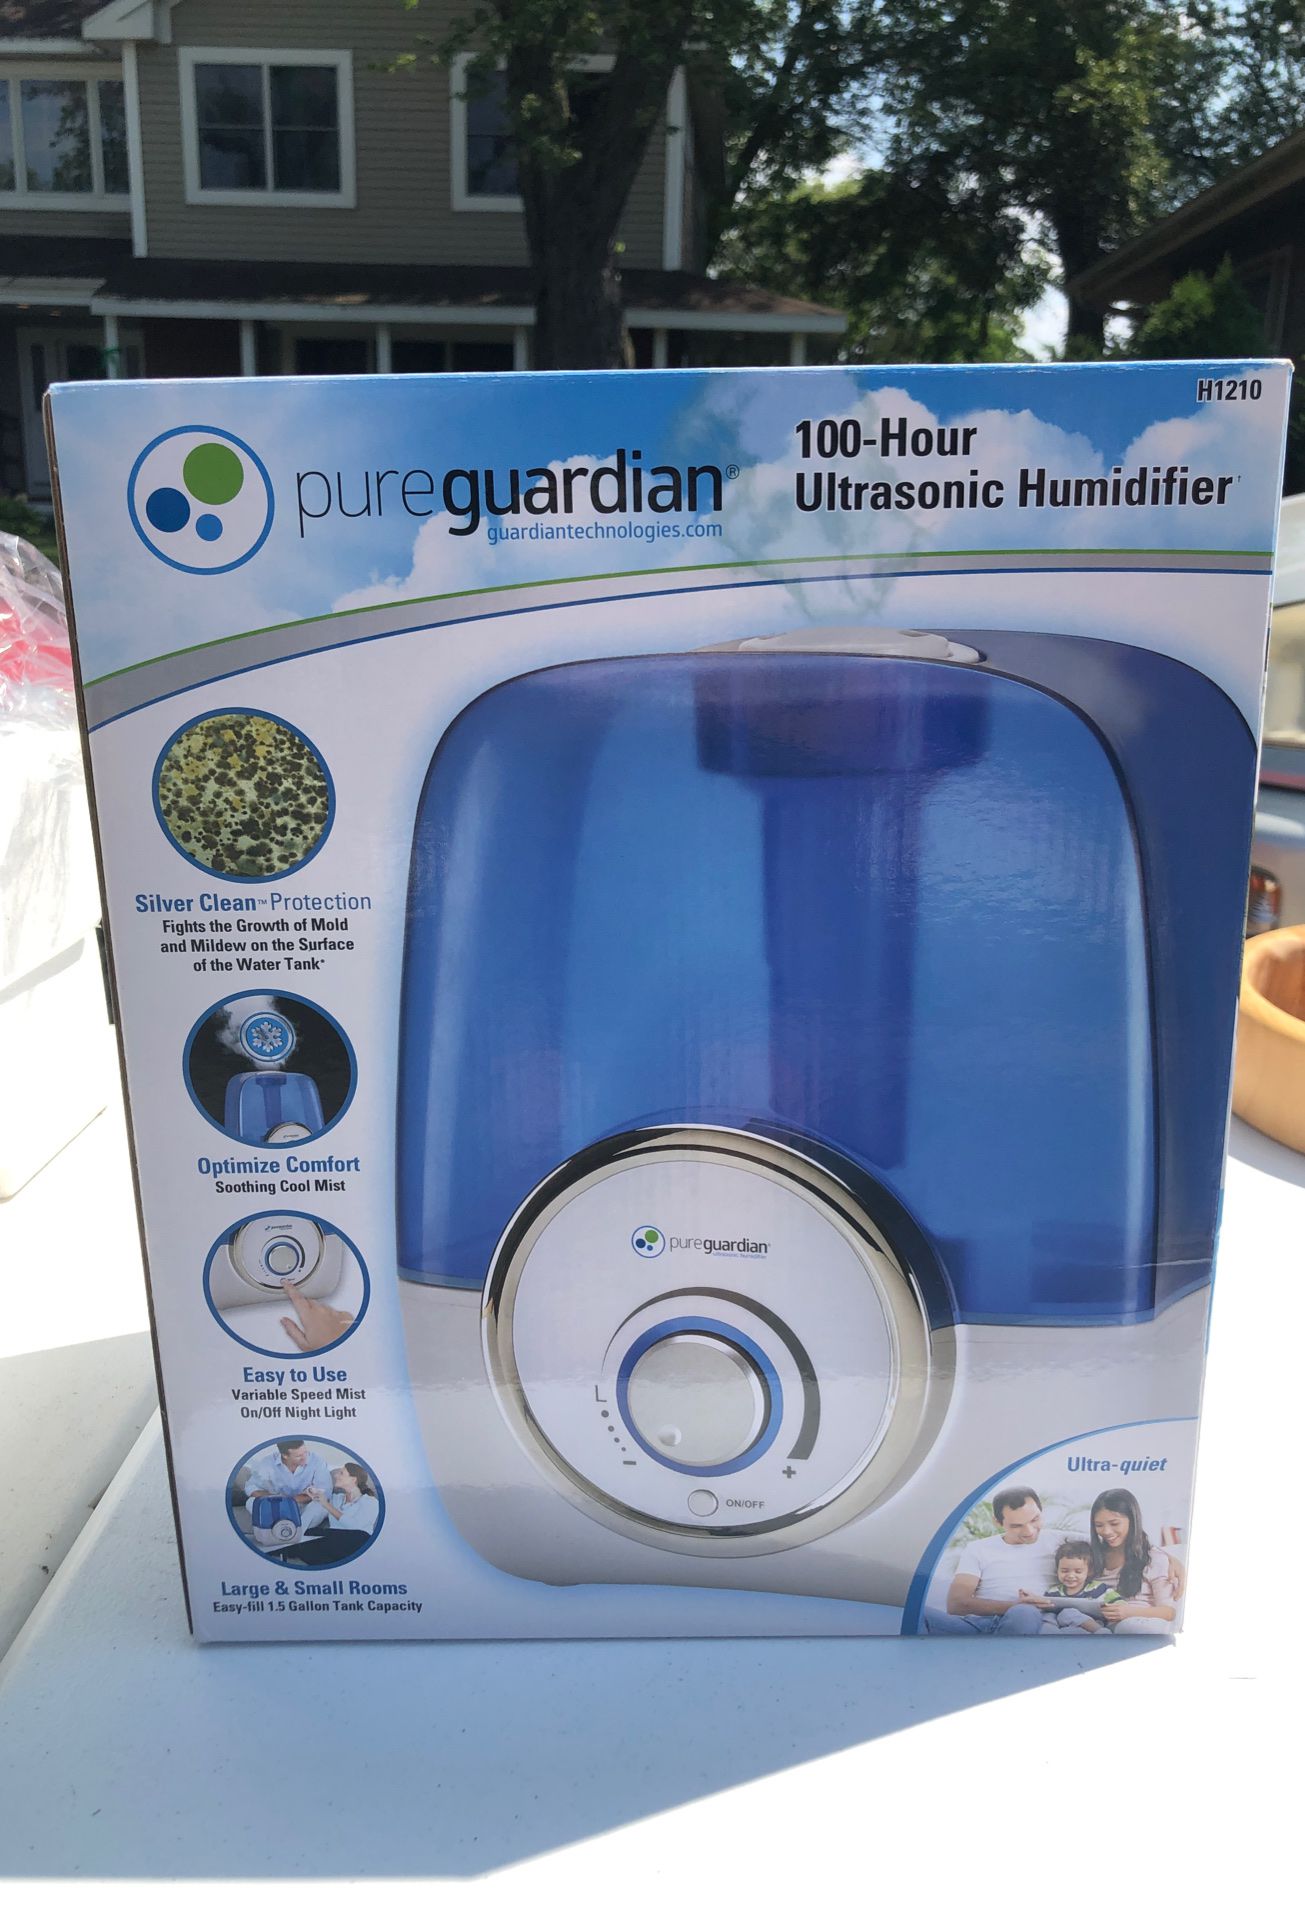 Pure guardian Ultrasonic Humidifier